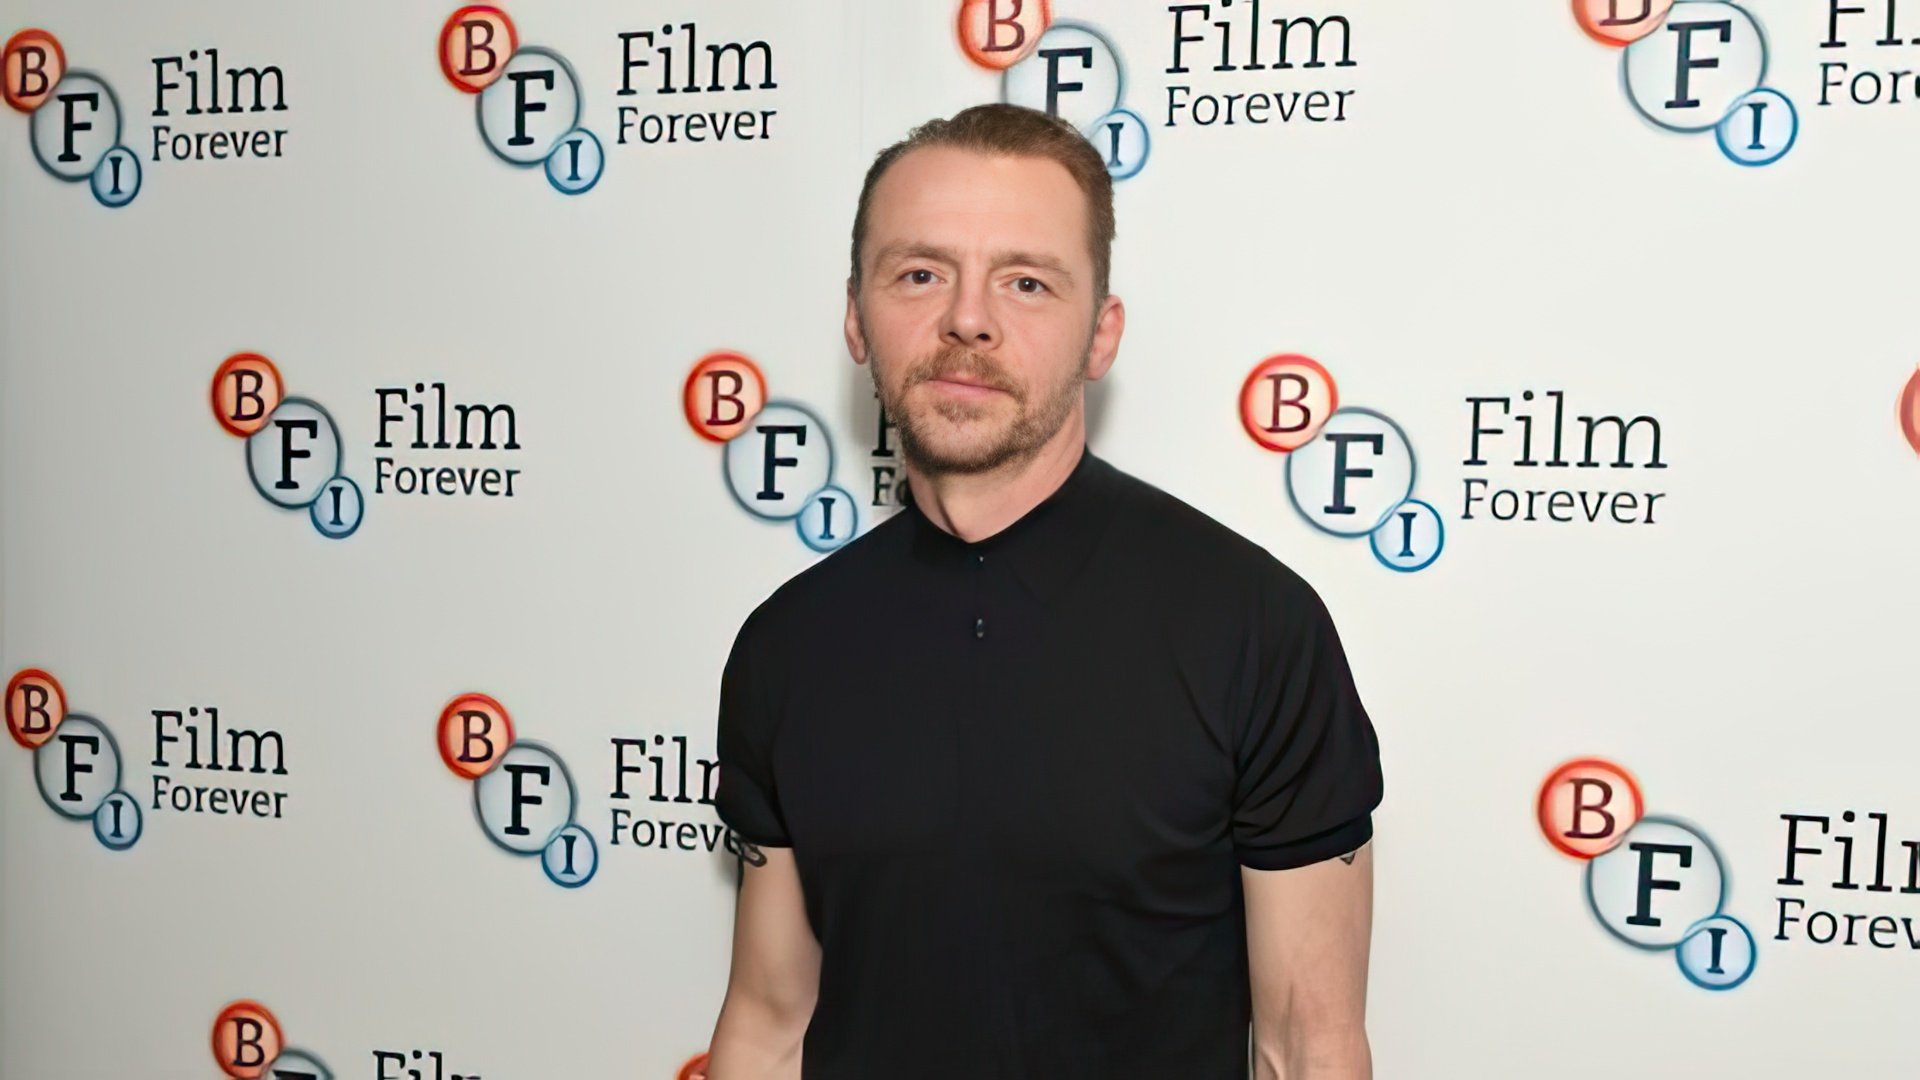 At BFI Screen Epiphany 2017